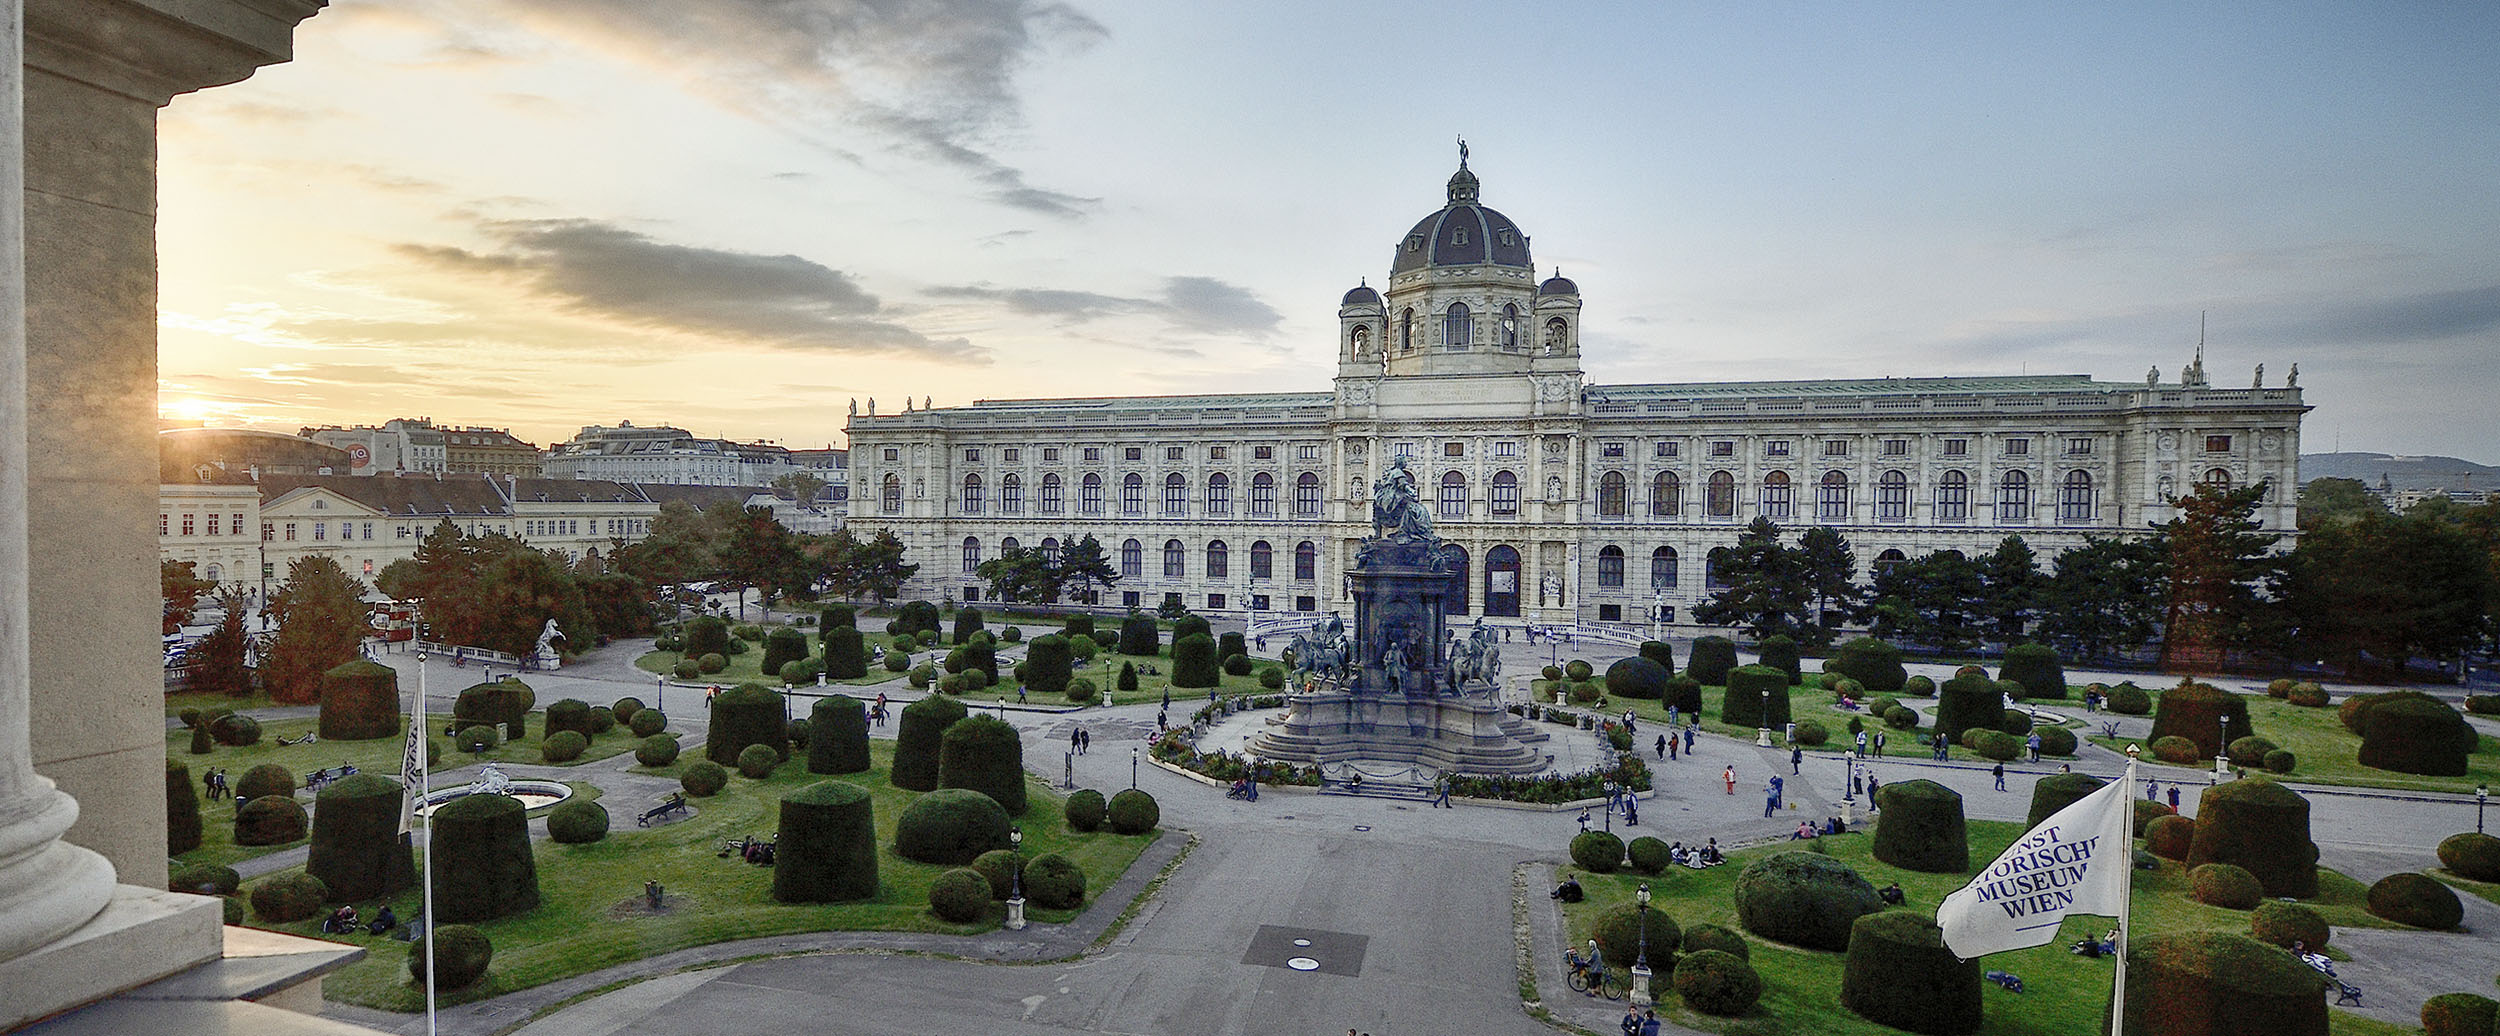 Blick auf das Naturhistorische Museum in Wien